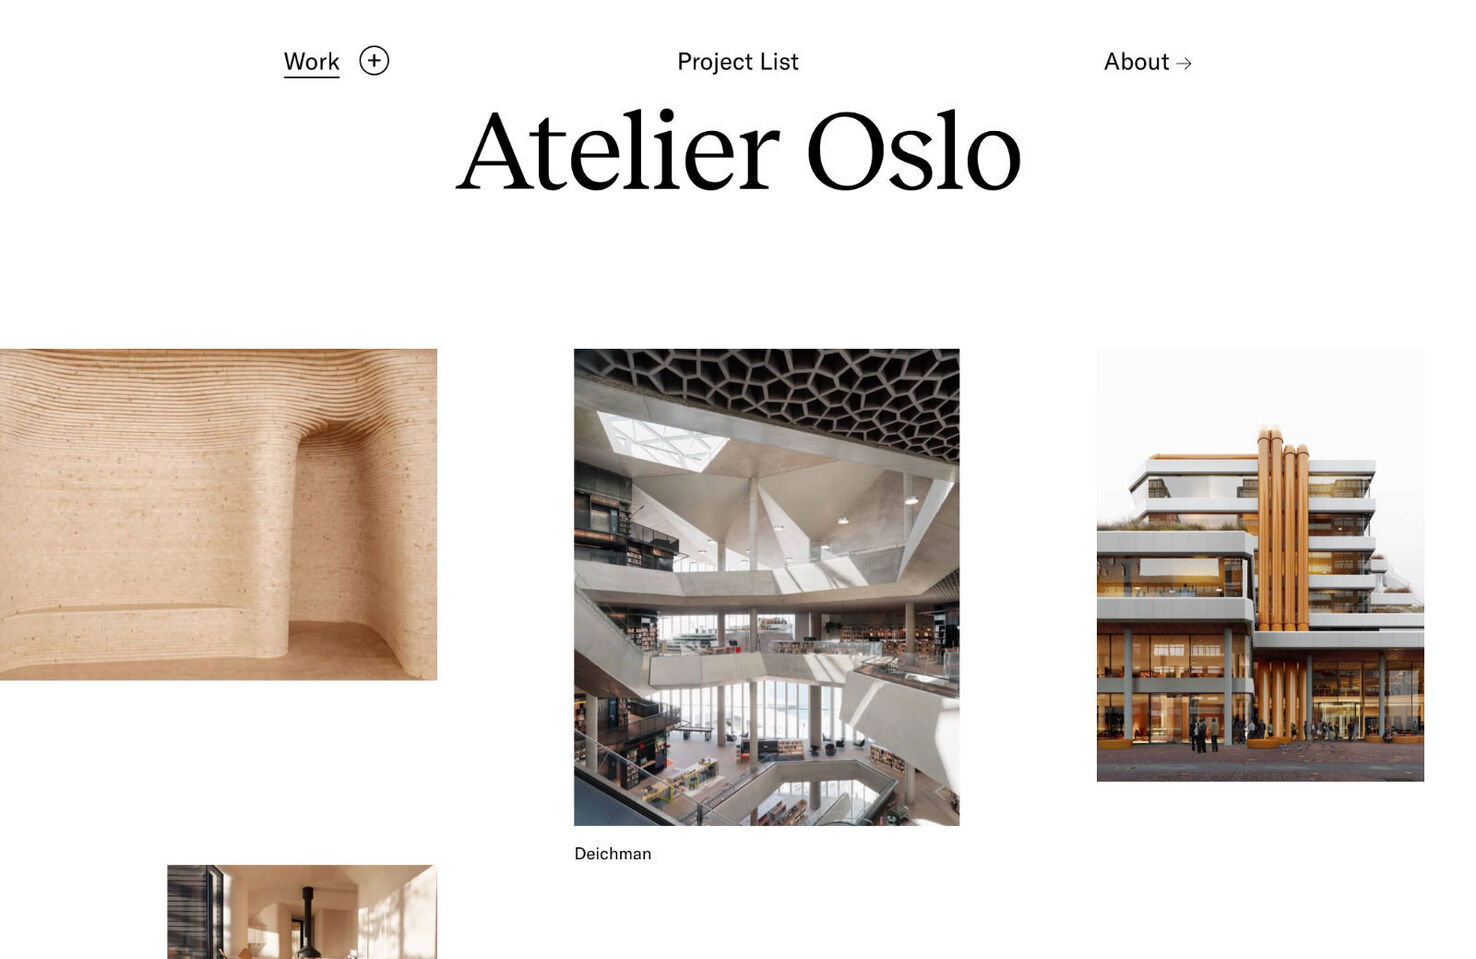 Atelier Oslo